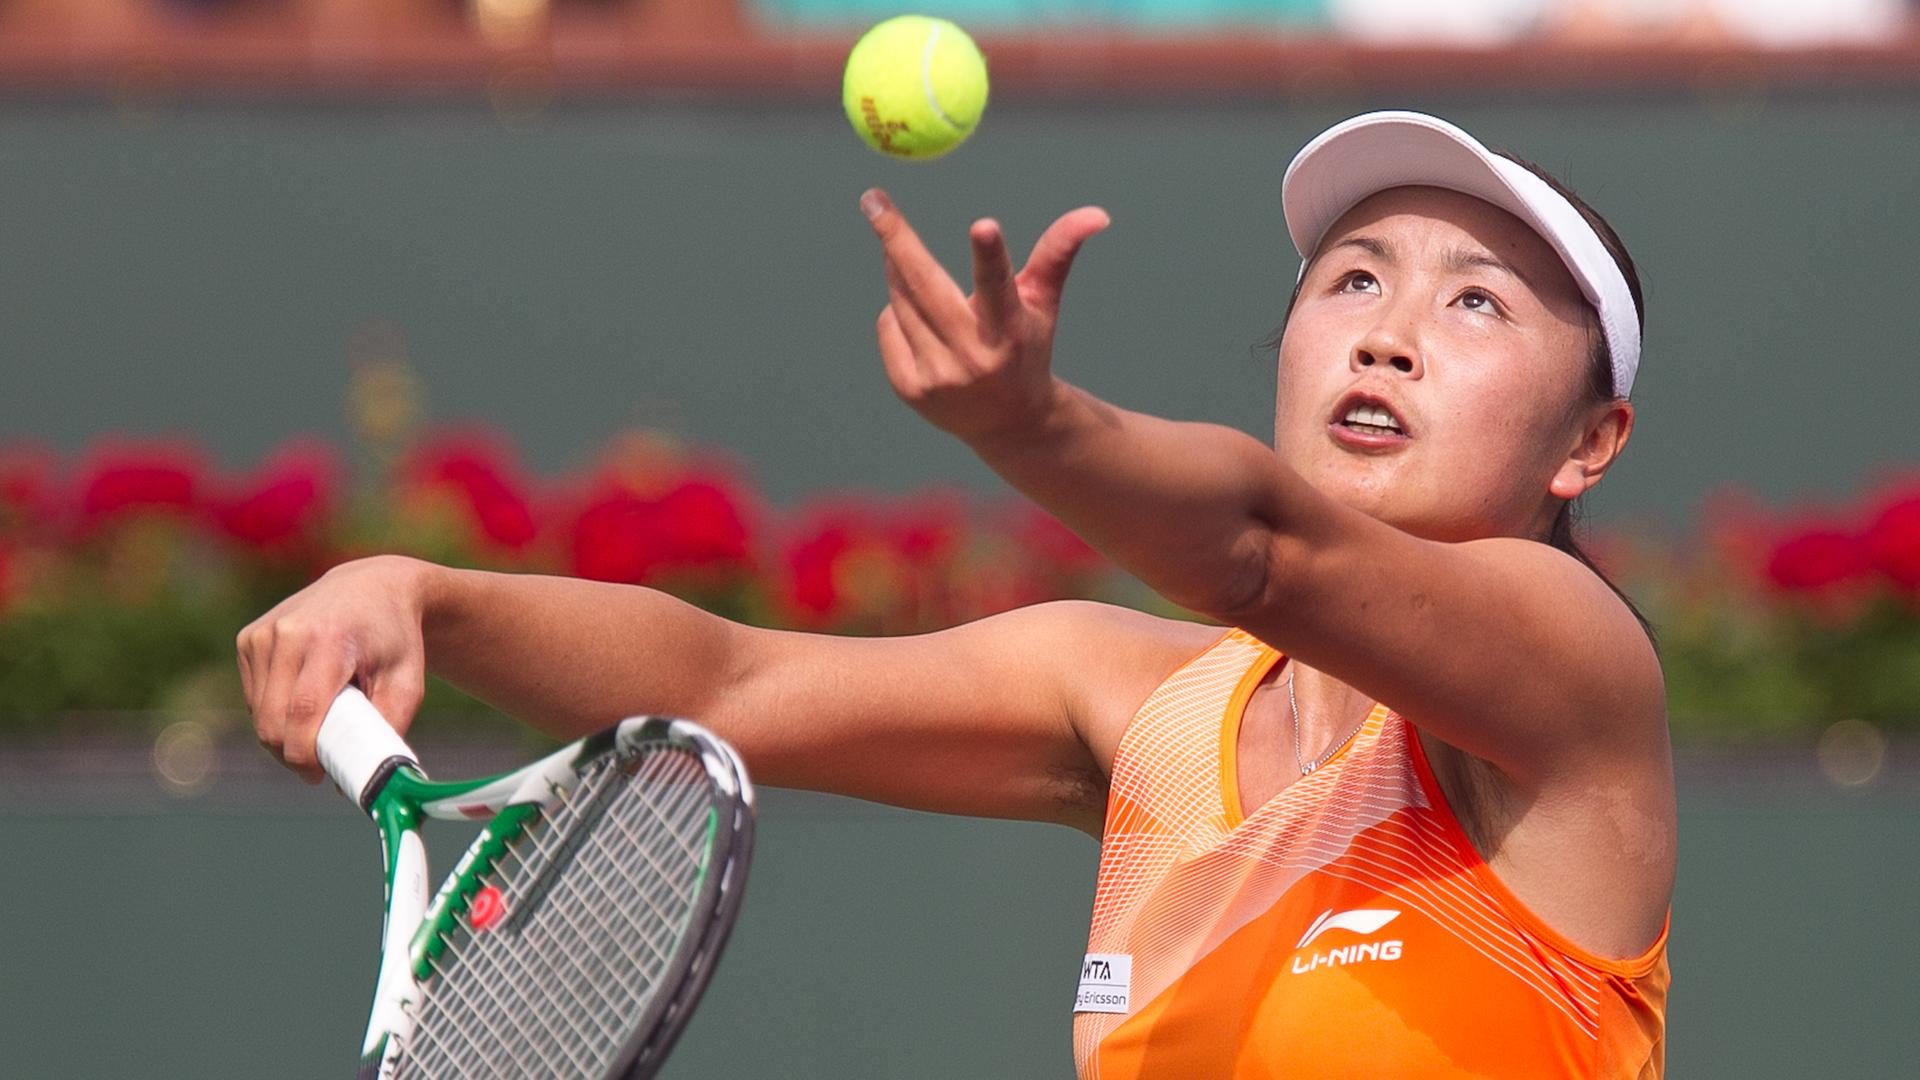 Die chinesische Tennisspielerin Peng Shuai (Aufnahme vom 17.11.2021) 